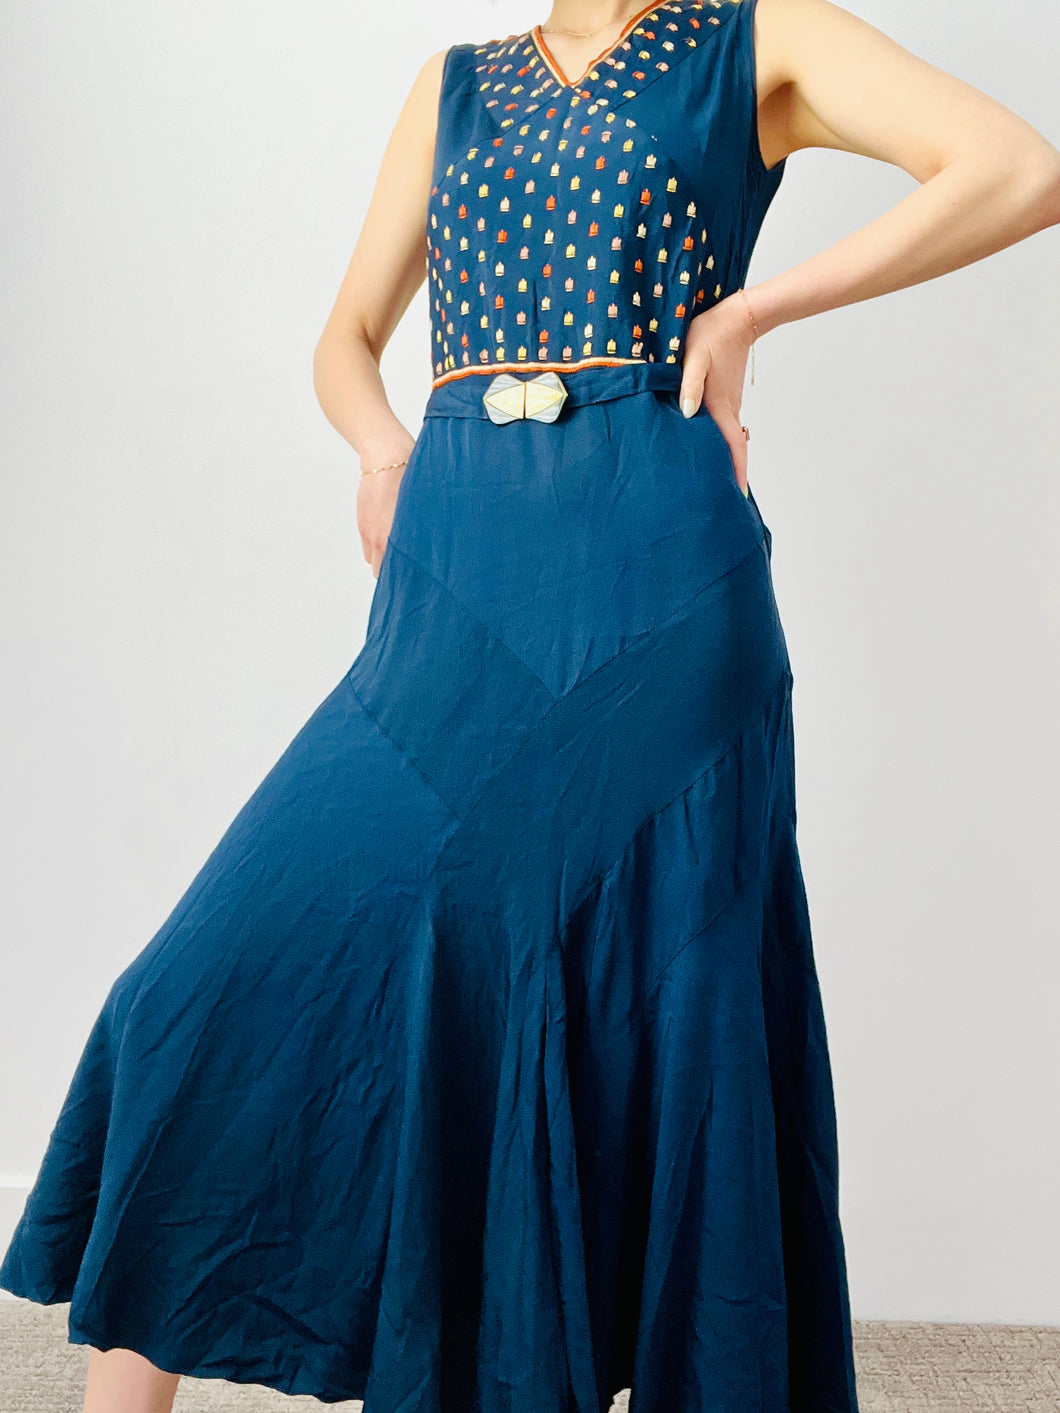 Vintage 1920s Art Deco blue embroidered flapper dress